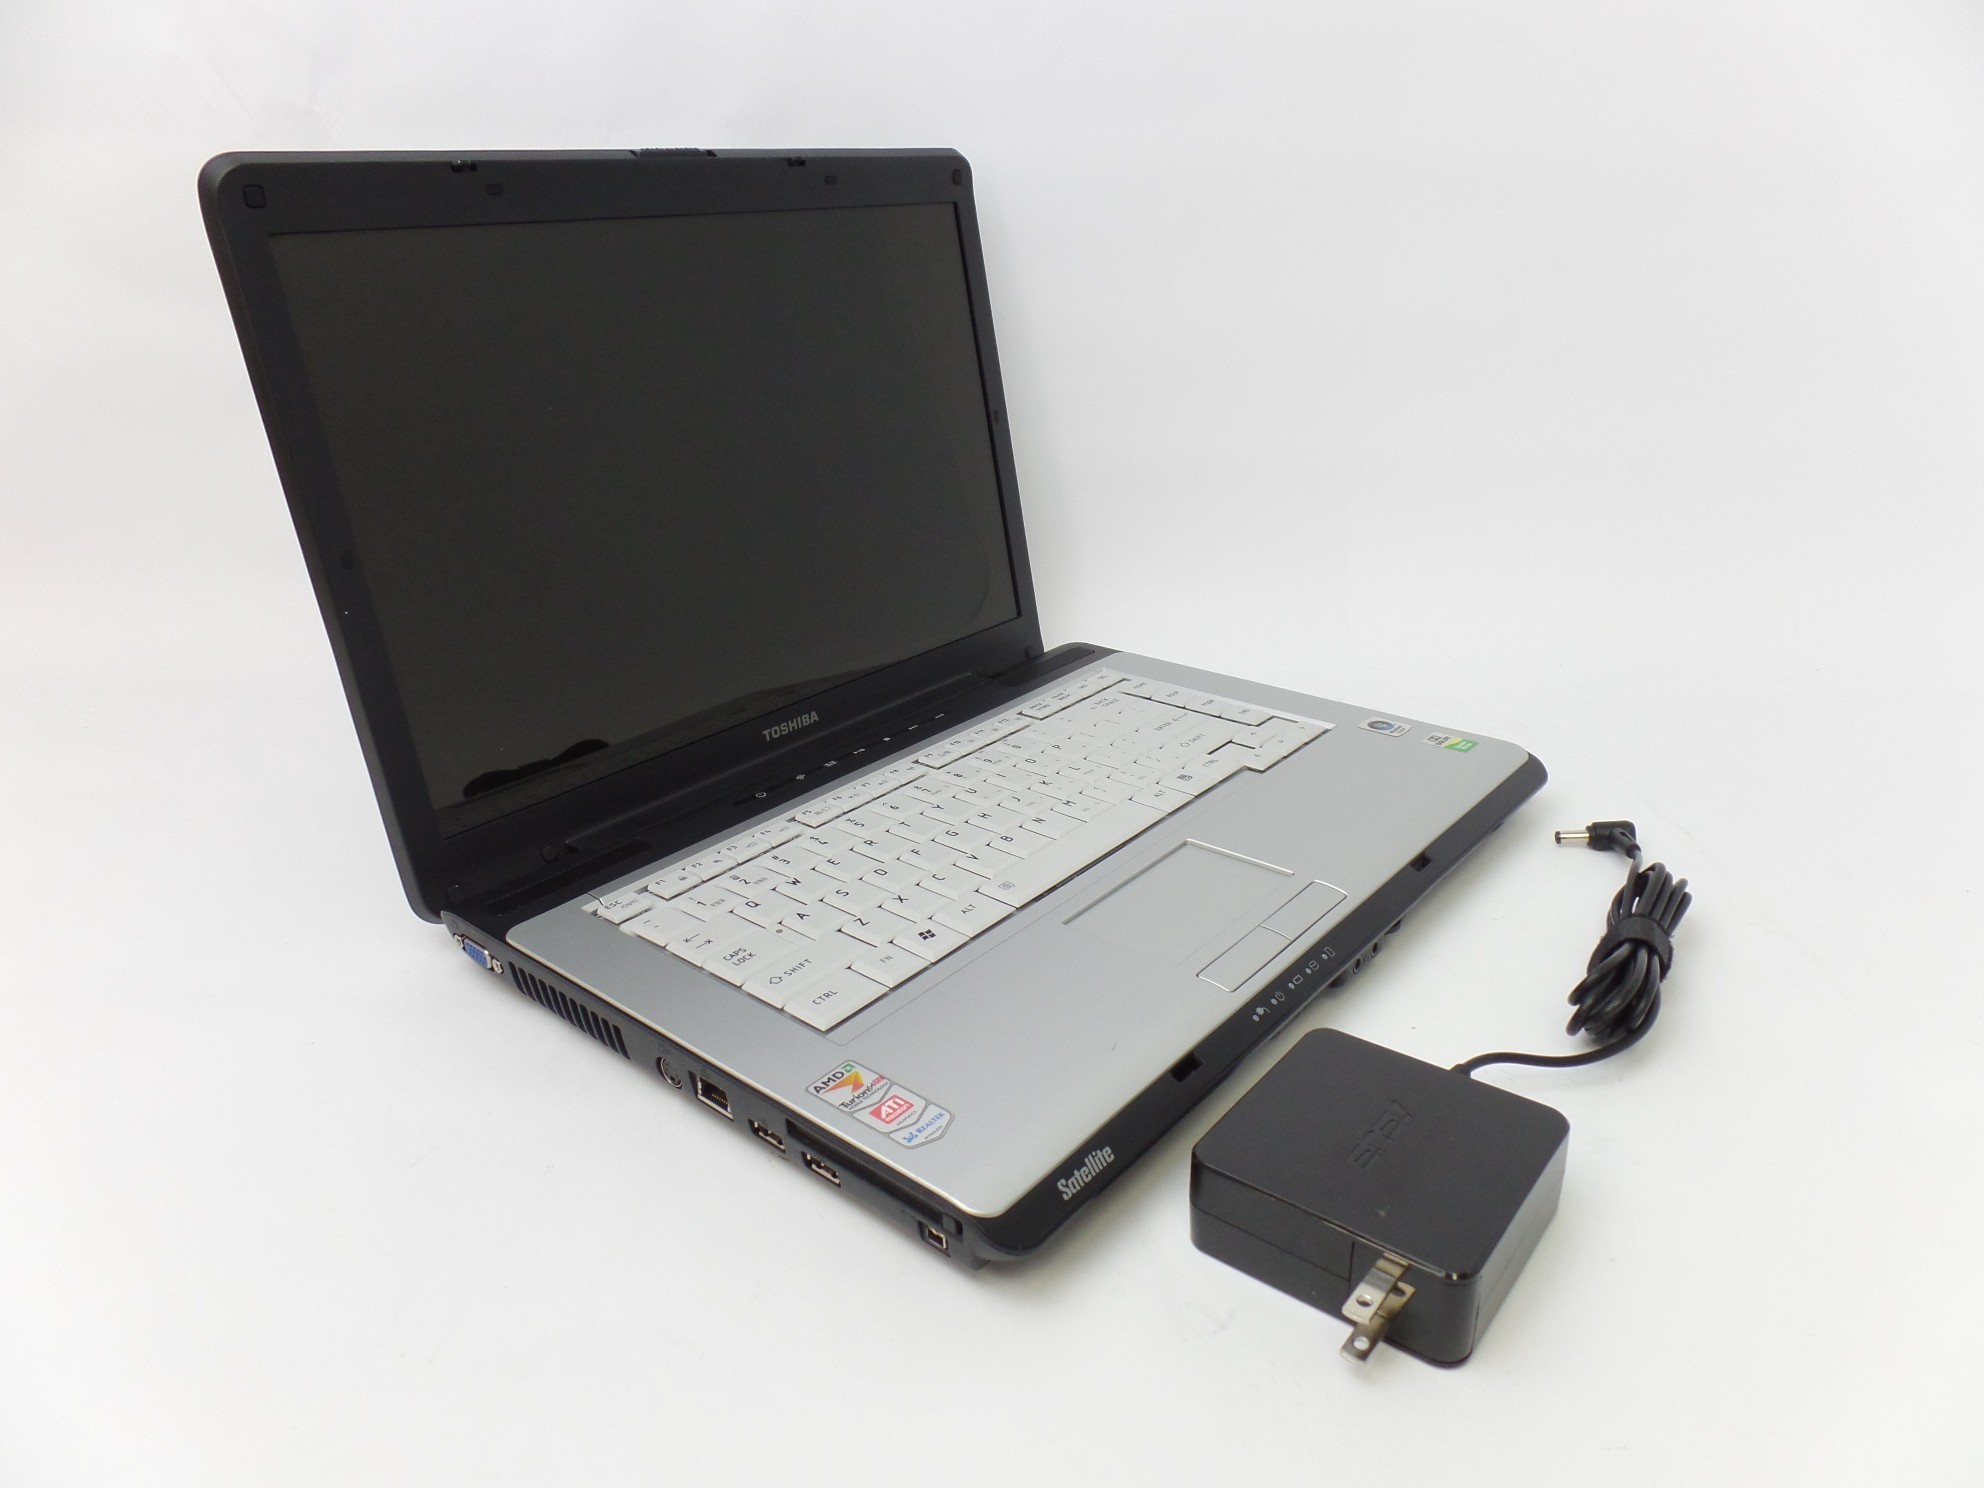 Toshiba Satellite A215-S7422 15.4" WXGA AMD Turion 64x2 3GB 160GB W7P Laptop U